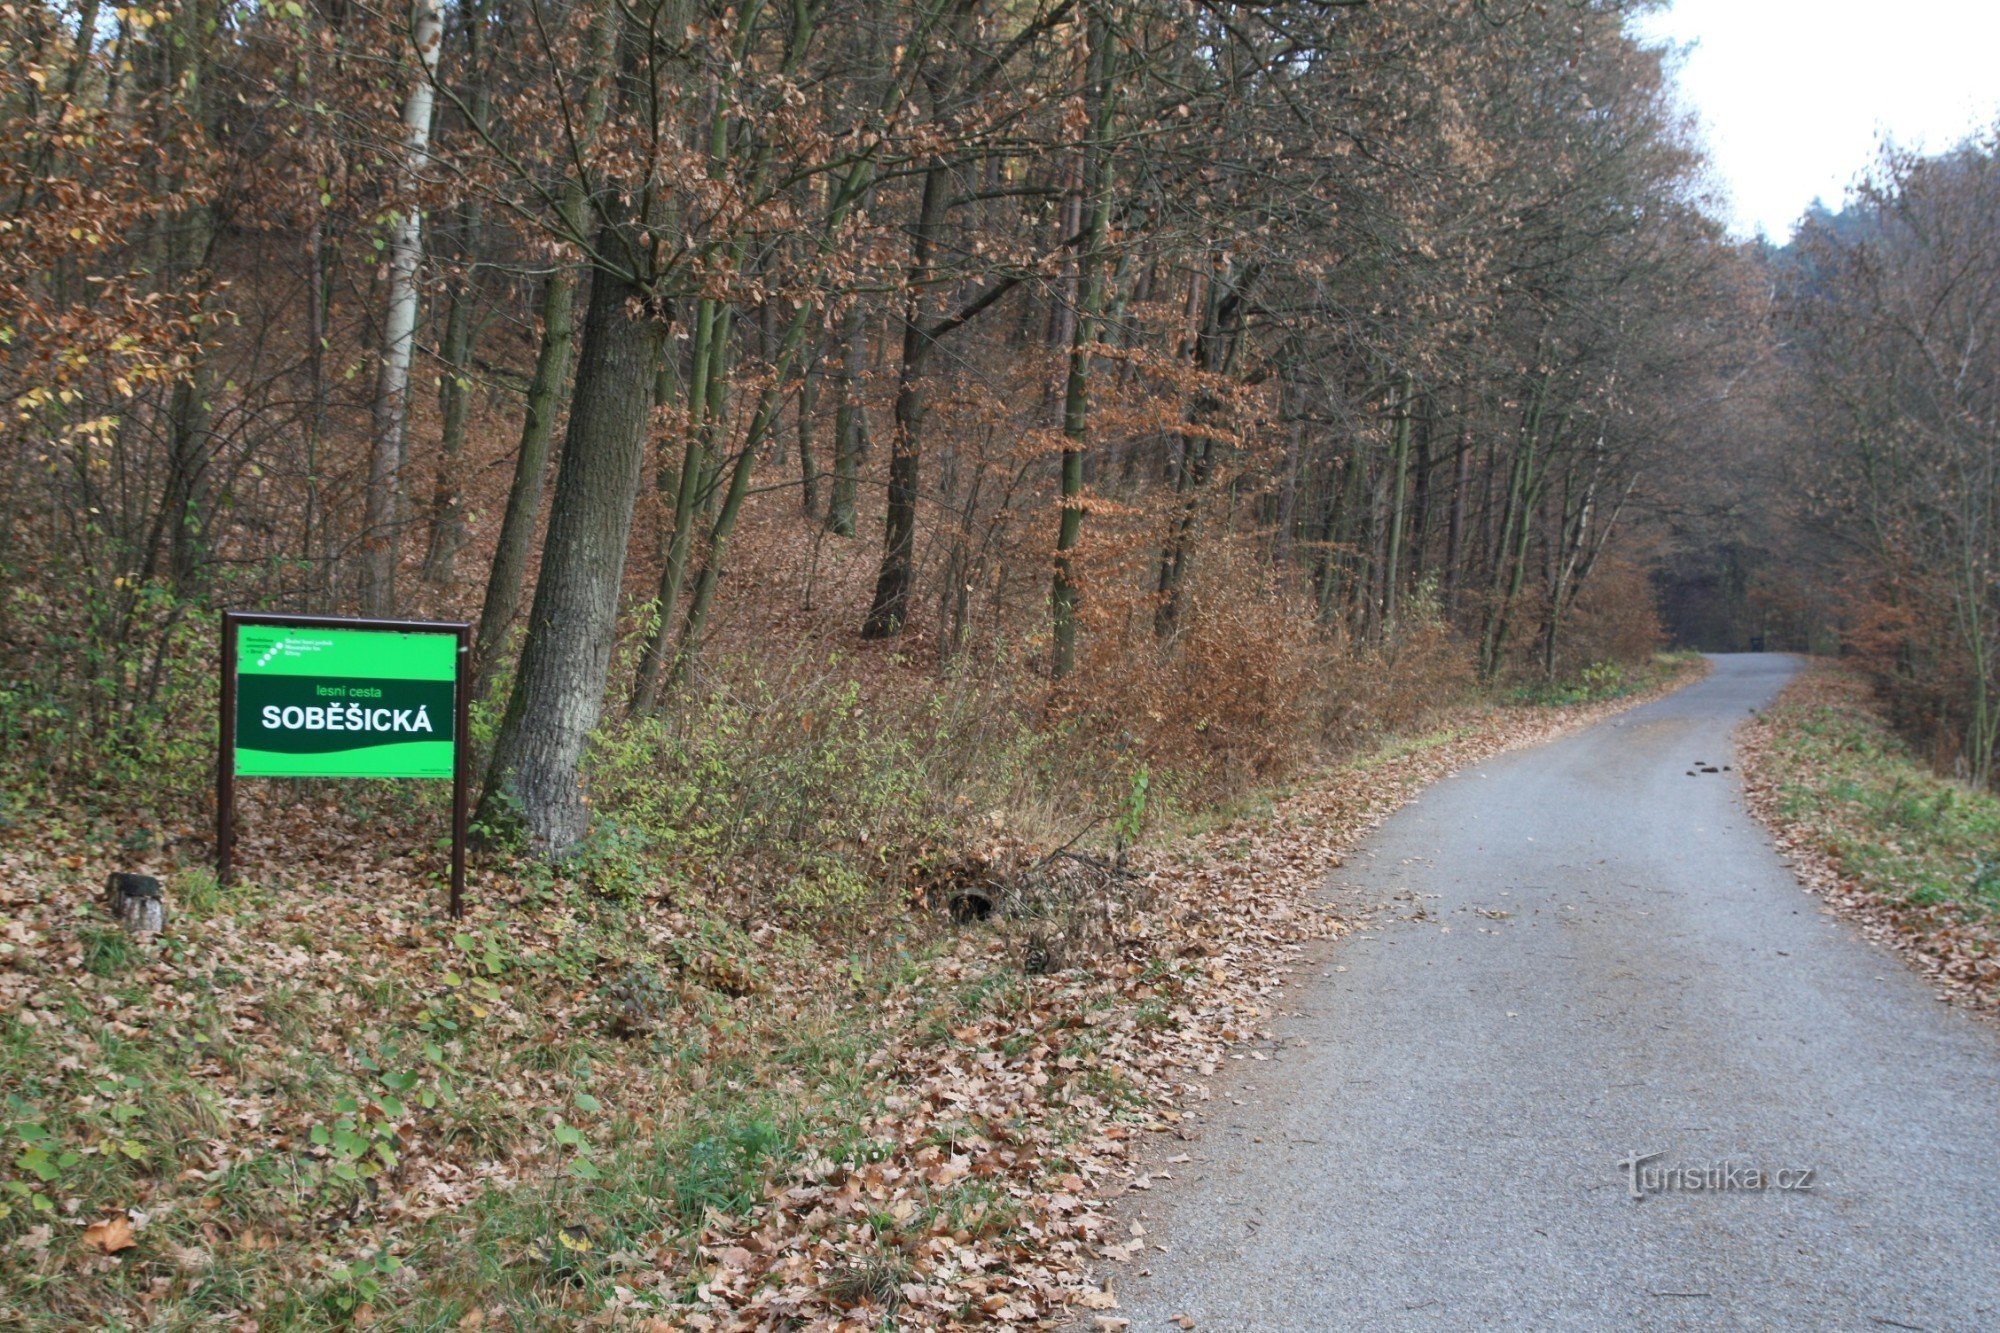 Soběšická cesta zaczyna się na końcu wsi na początku lasu